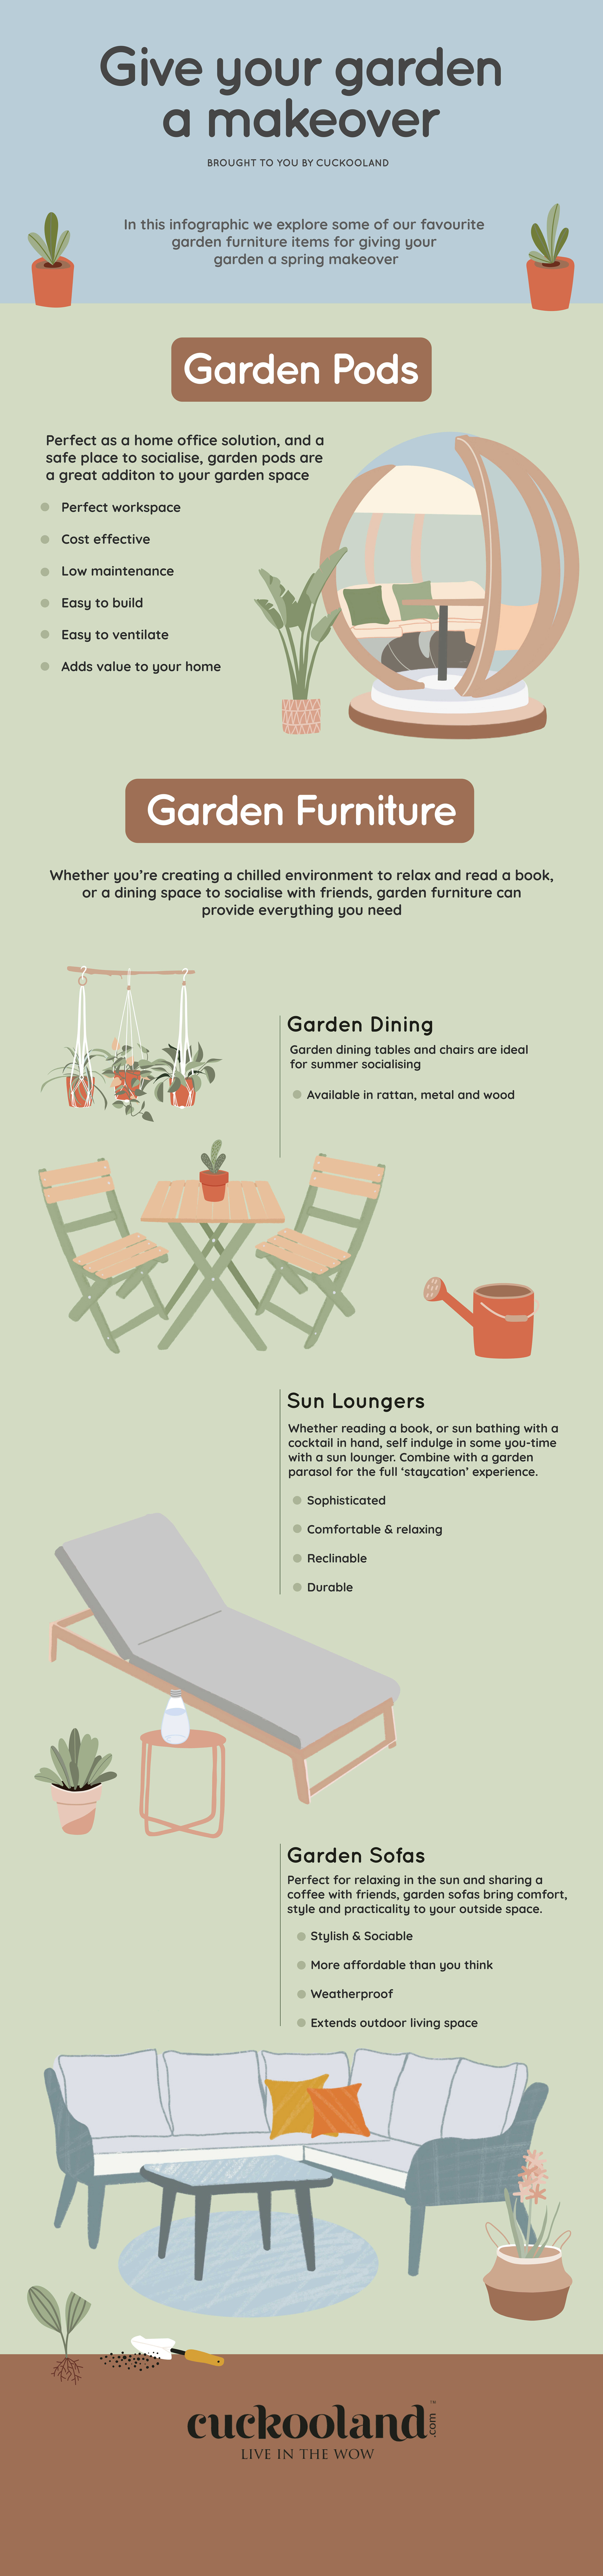 garden furniture inspiration